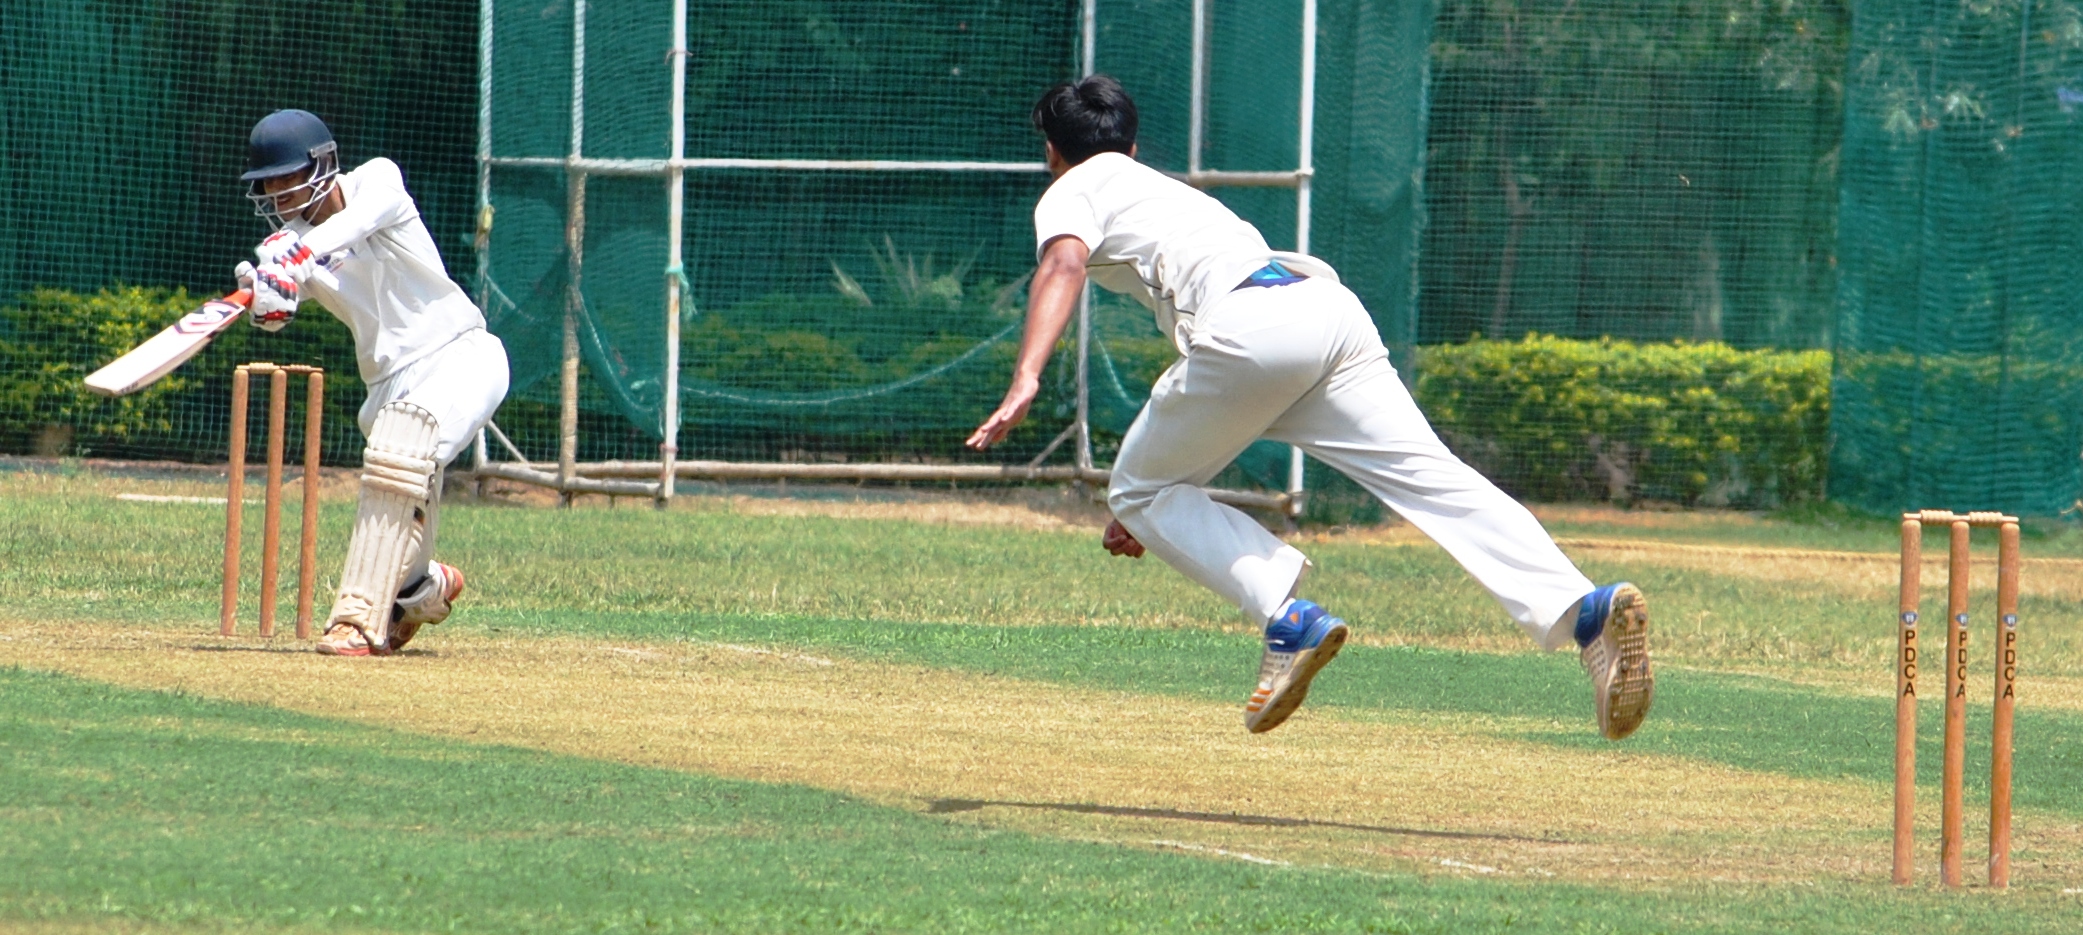 पहिल्या पीवायसी गोल्डफिल्ड राजू भालेकर करंडक 2018 निमंत्रित 19 वर्षाखालील क्रिकेट स्पर्धेत व्हेरॉक वेंगसरकर क्रिकेट अकादमी, एमसीए 1 संघांची विजयी सलामी